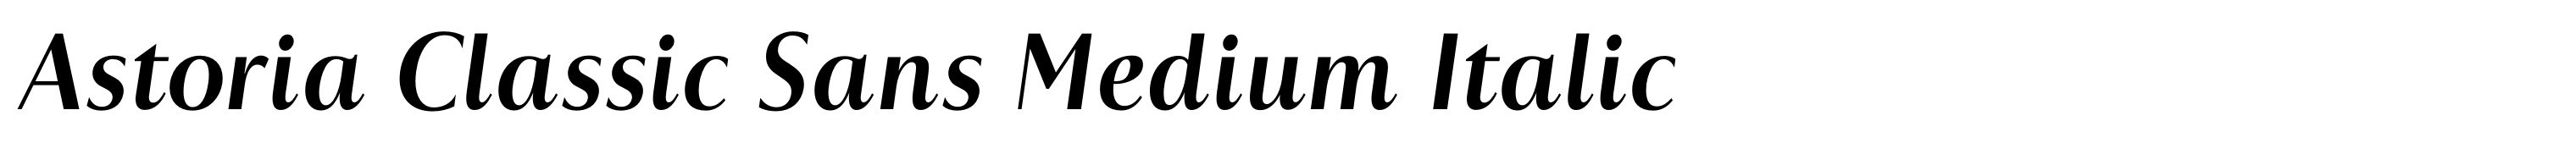 Astoria Classic Sans Medium Italic